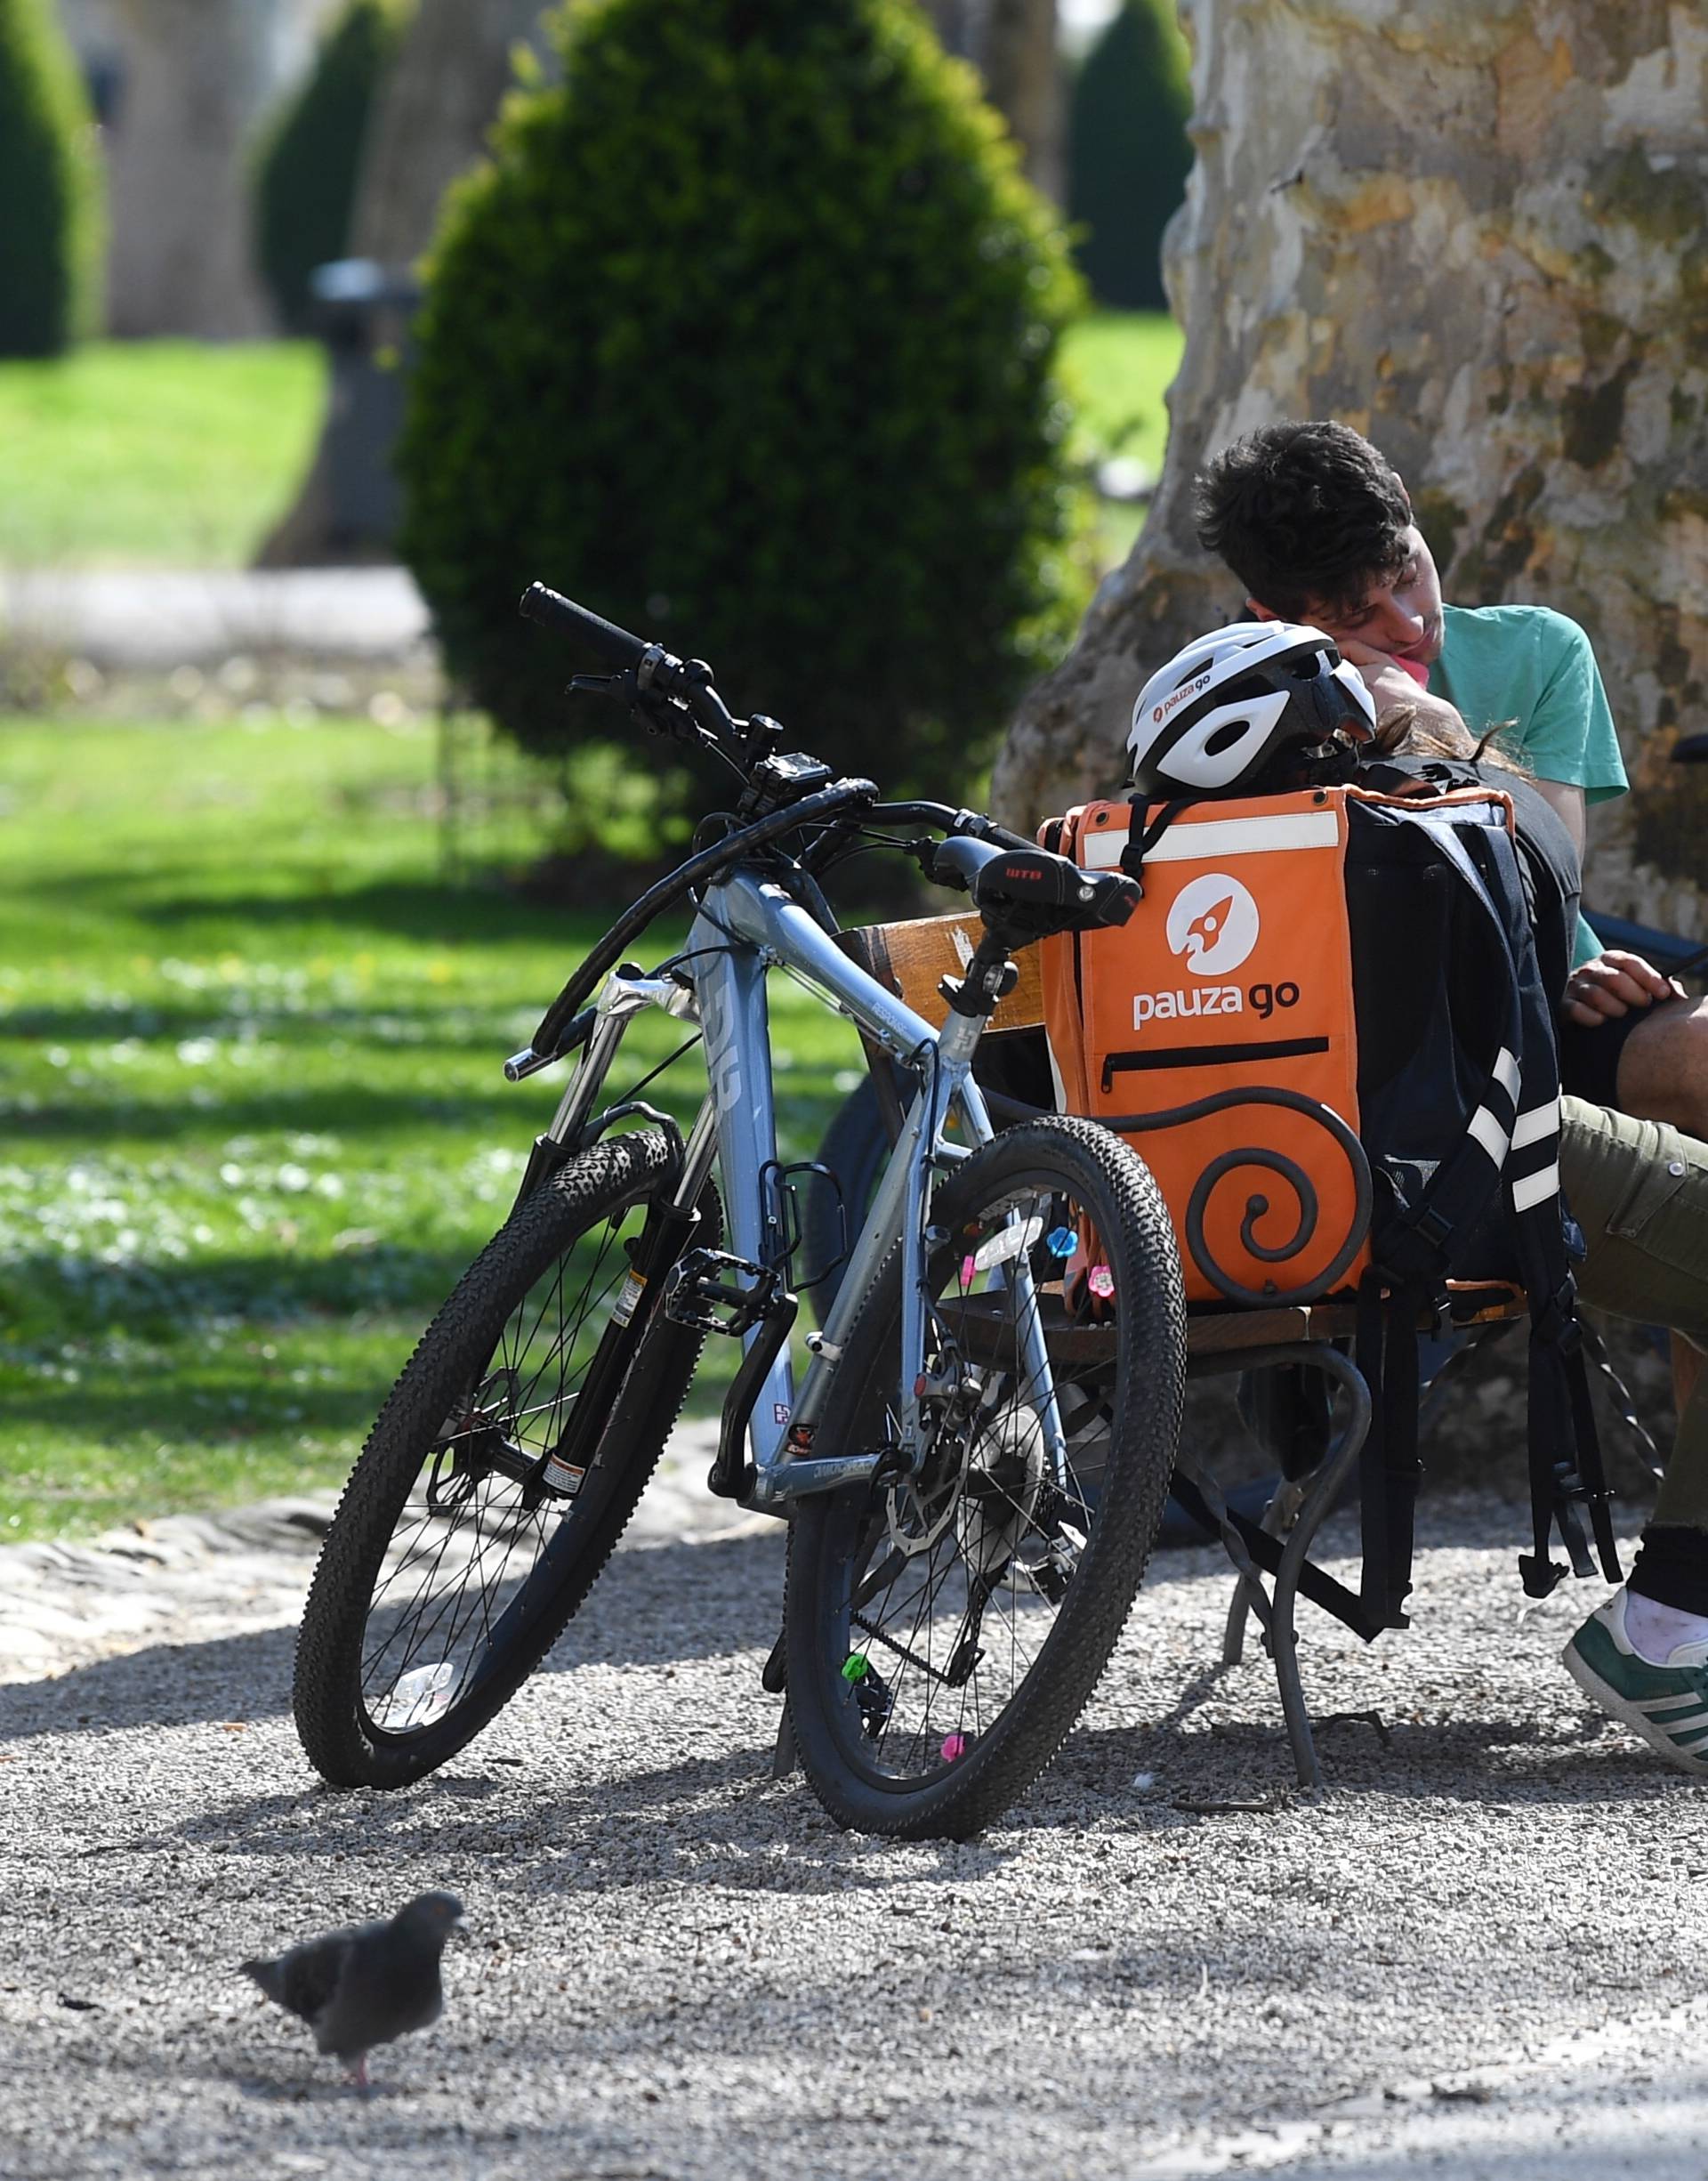 Zagreb: Ljubav između dostavljača na biciklima dvaju konkurentskih tvrtki